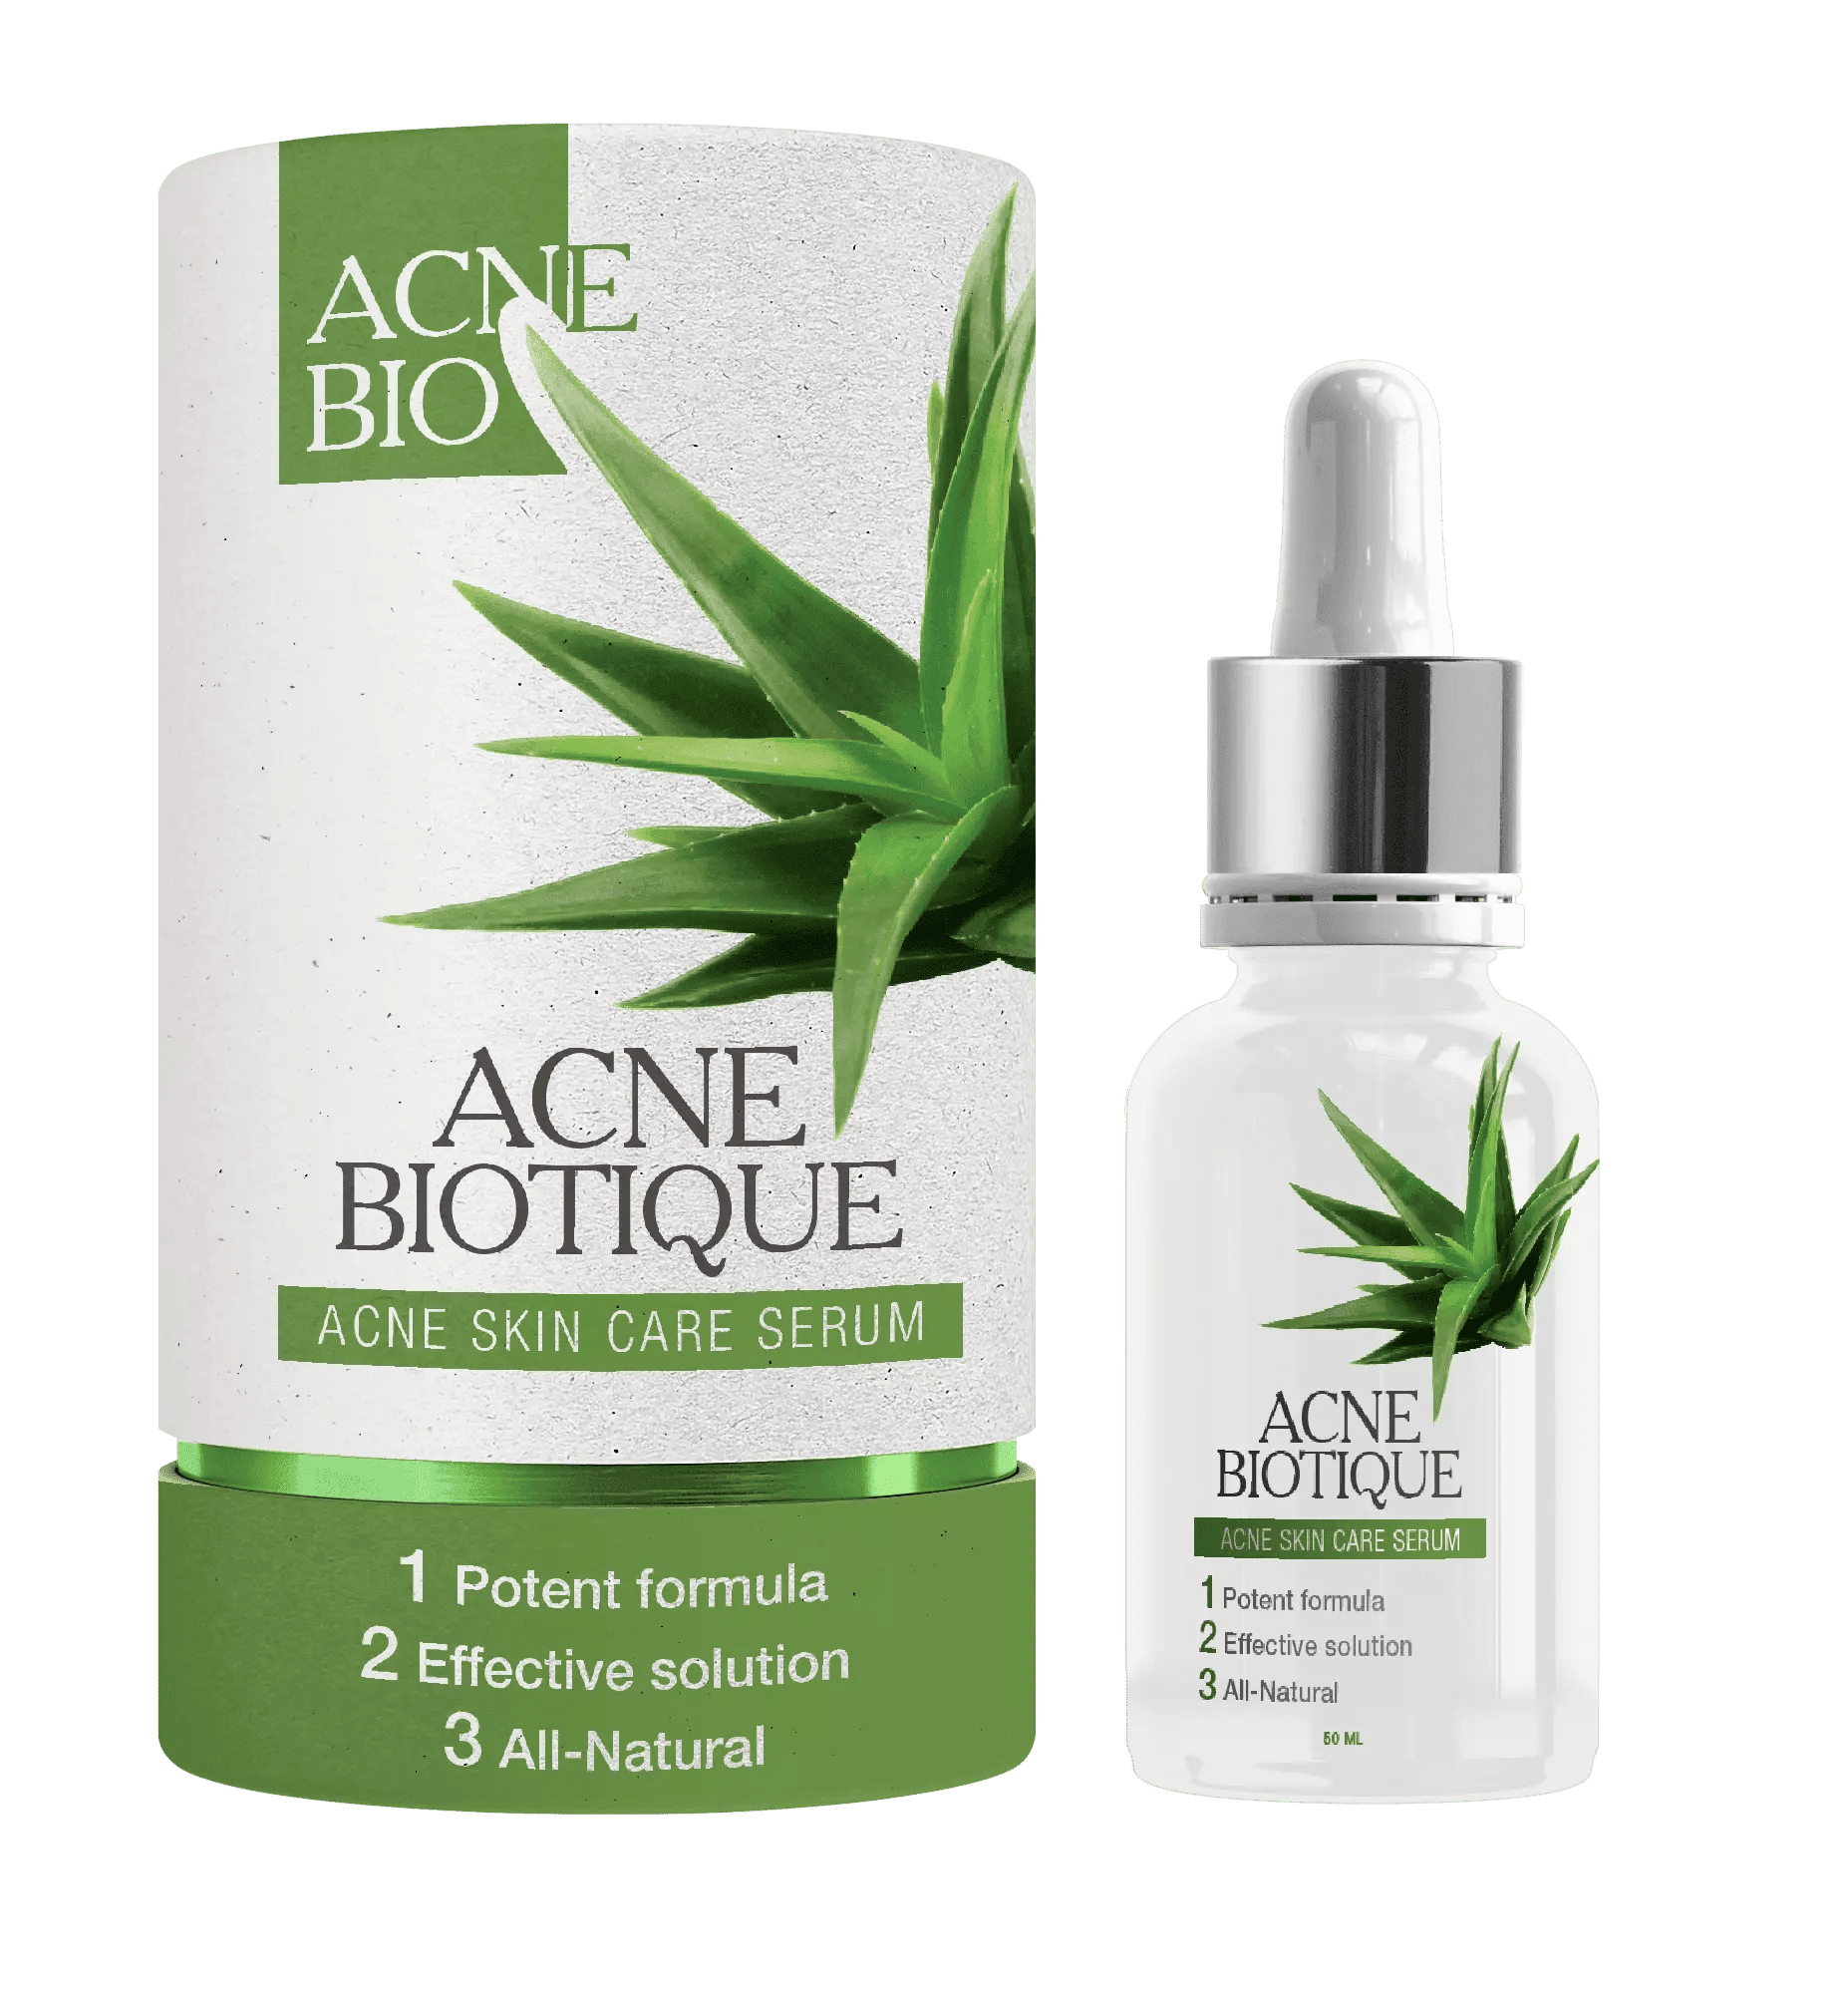 Acne Biotique Customer Reviews